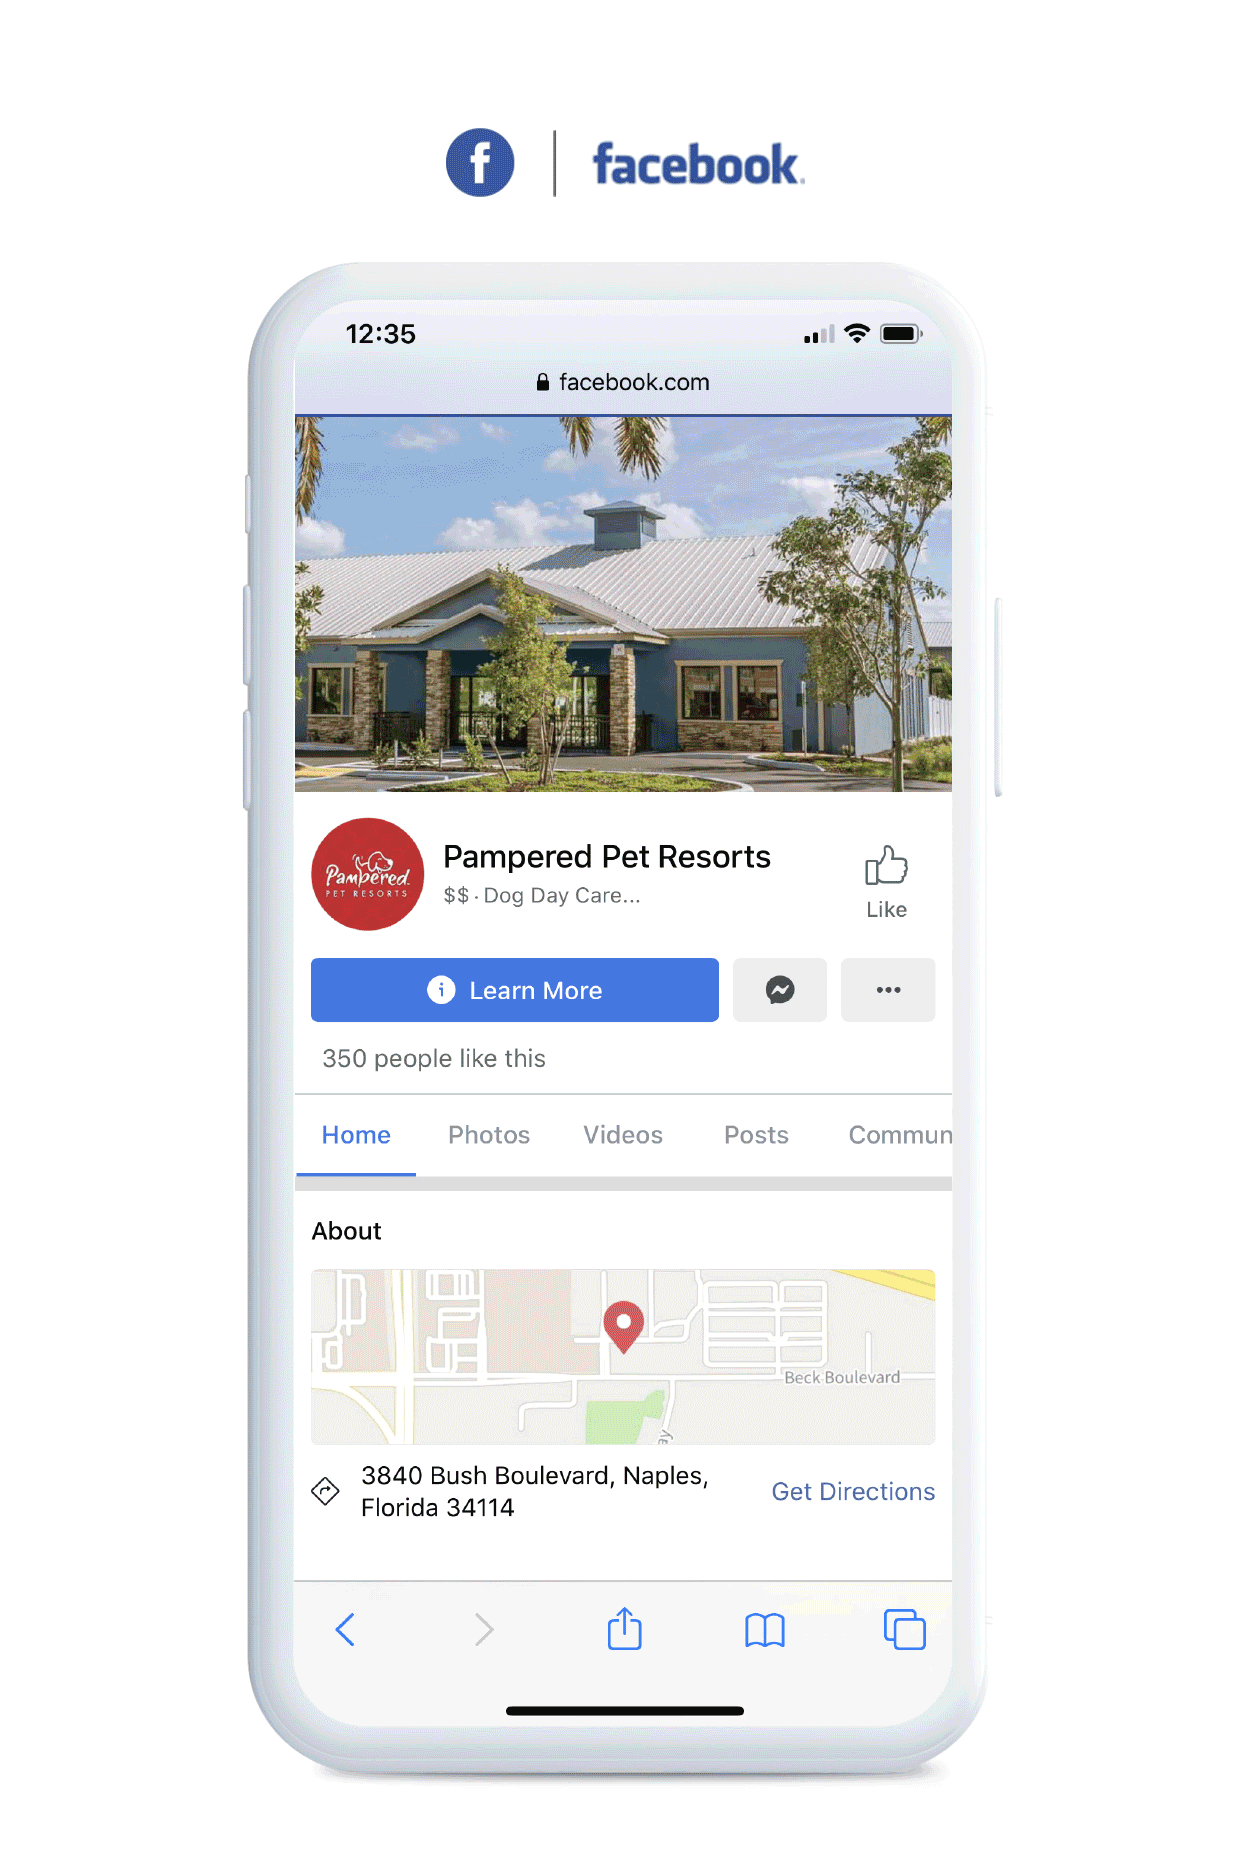 Pampered Pet Resorts - Facebook Social Media Marketing